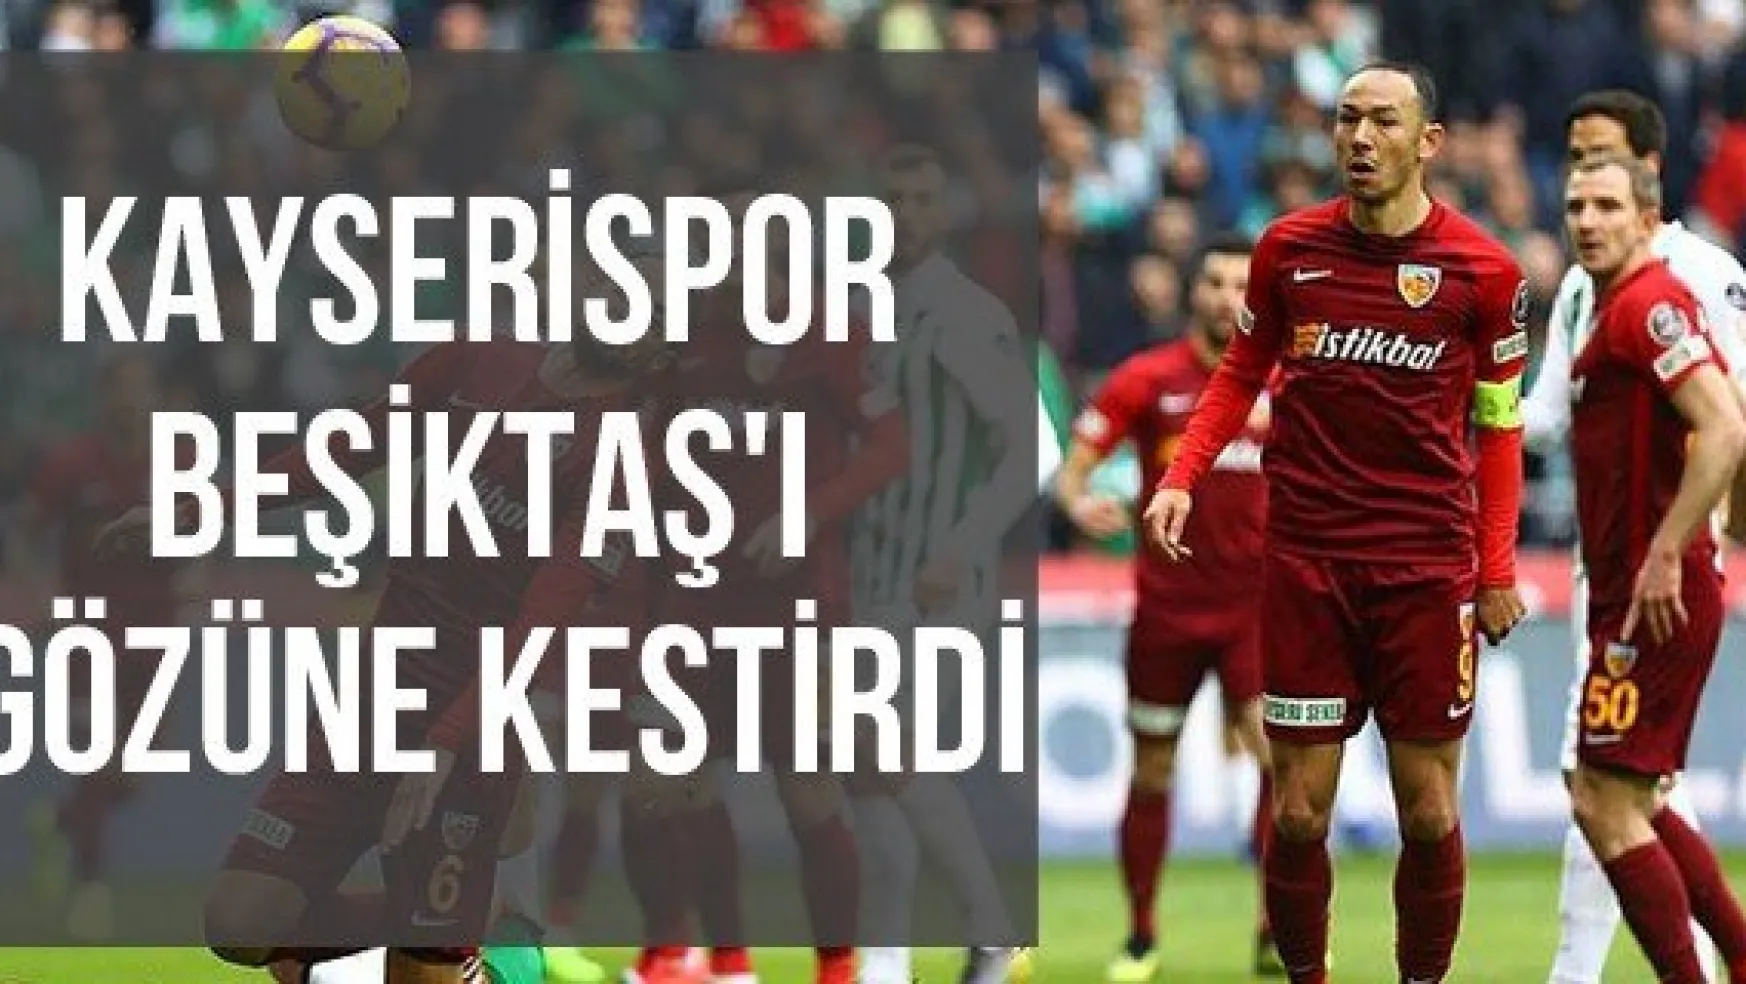 Kayserispor Beşiktaş'ı Gözüne Kestirdi